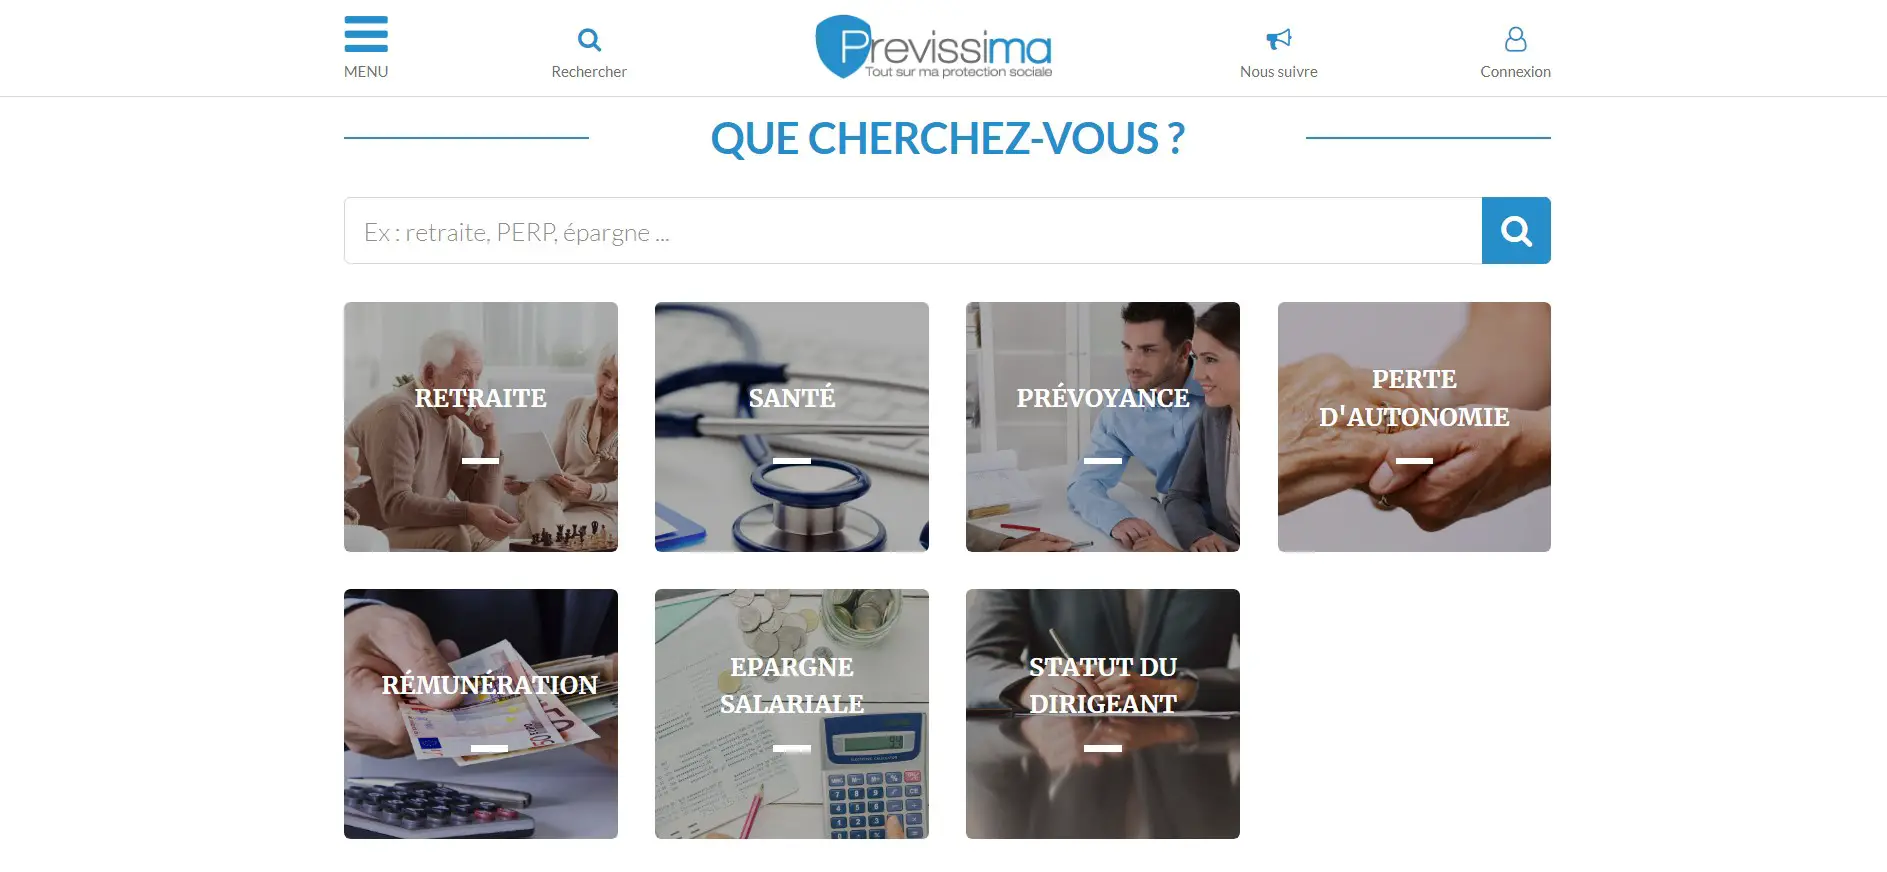 You are currently viewing Previssima : le site sur la protection sociale pour expatriés et frontaliers